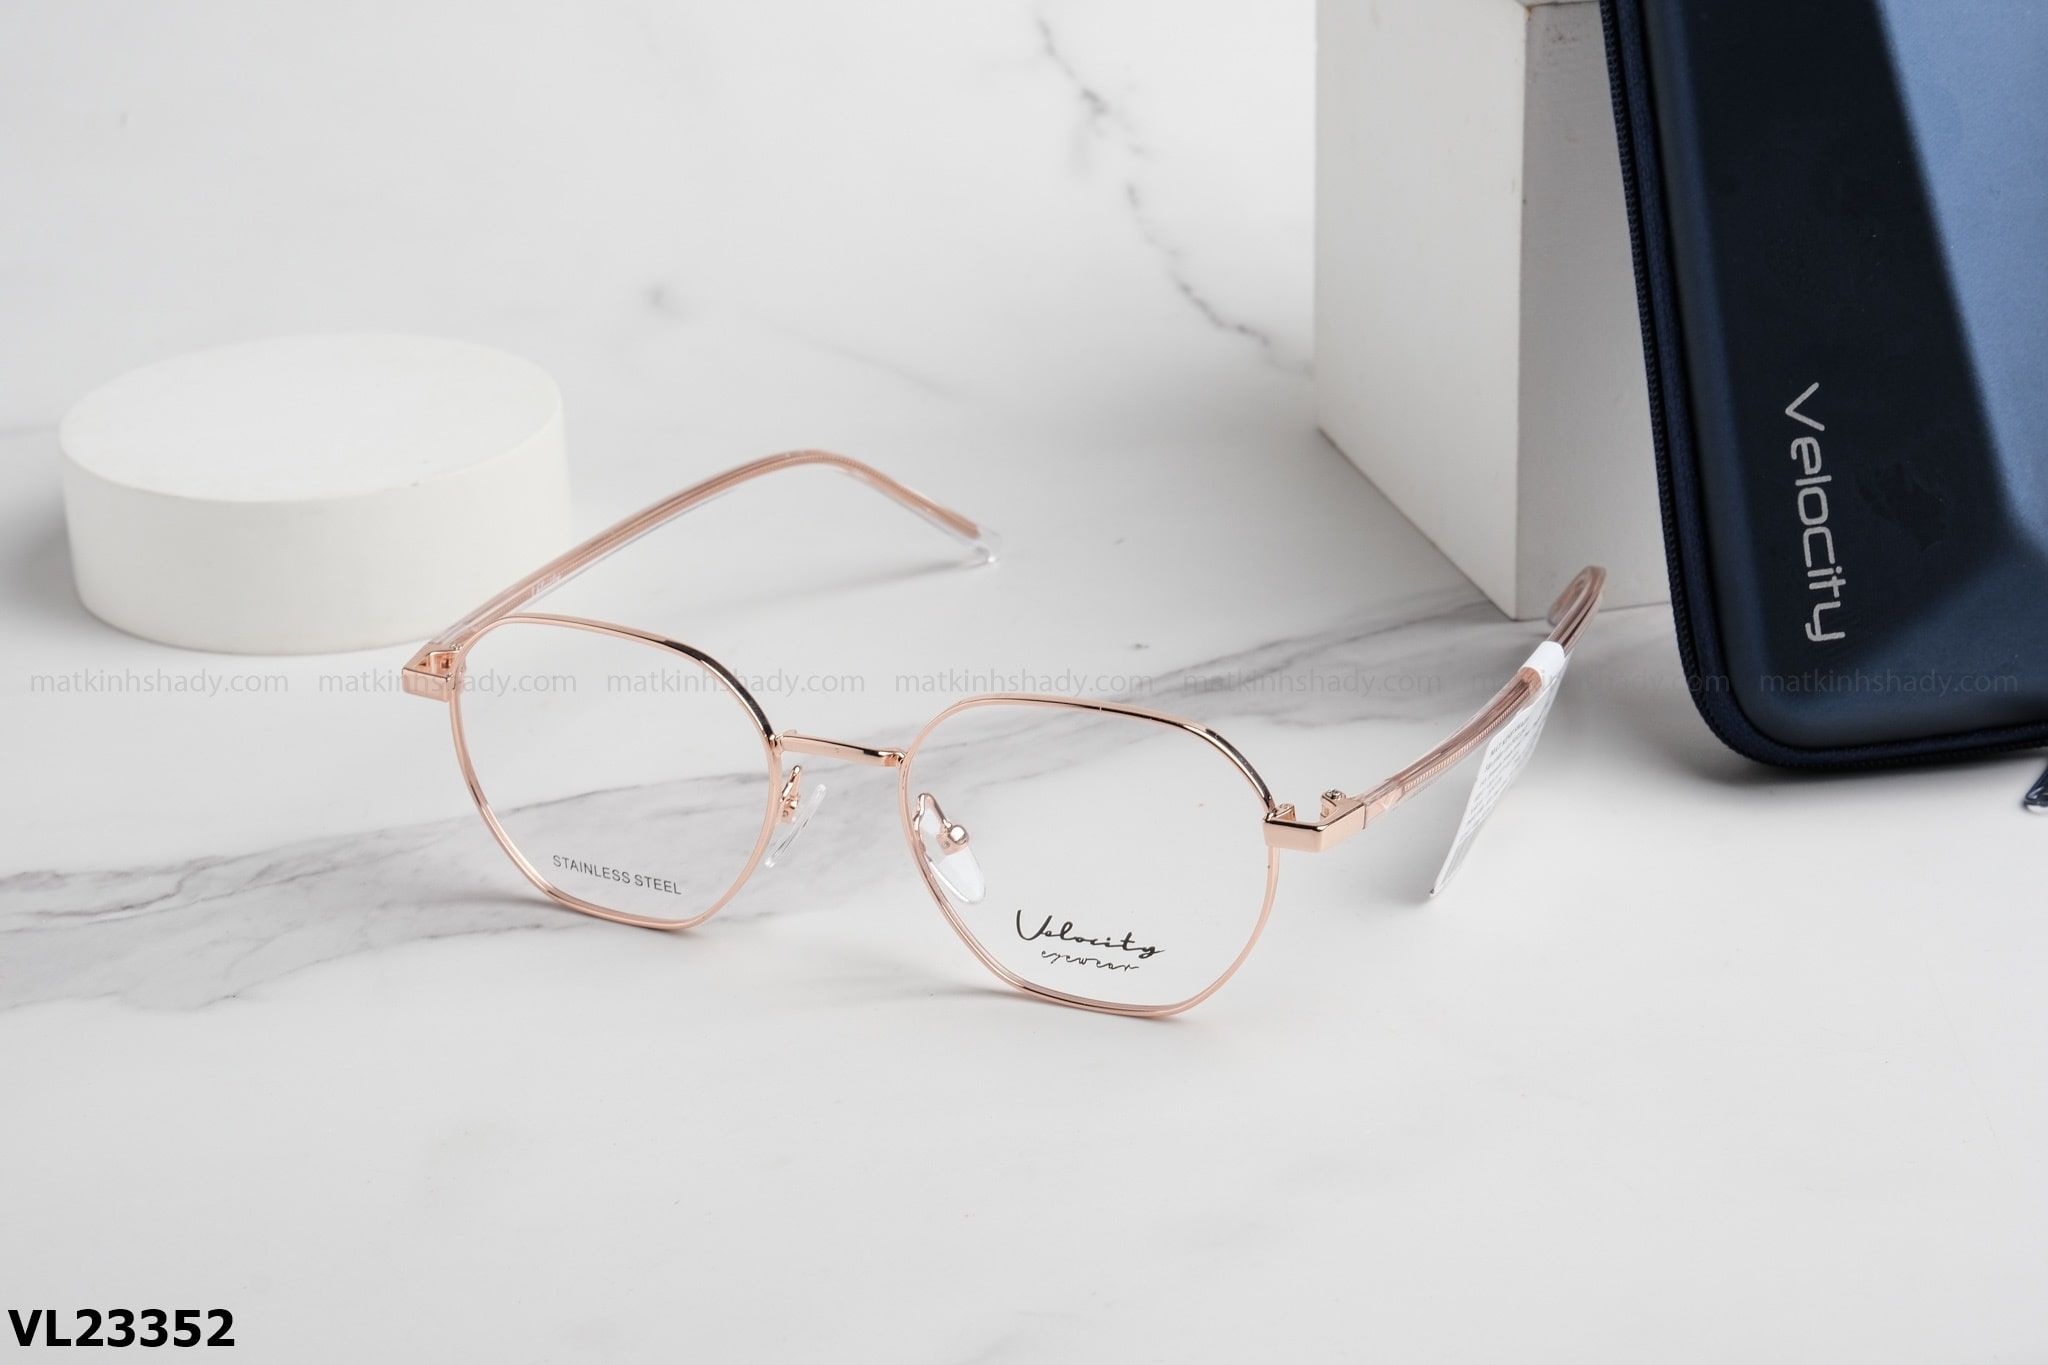  Velocity Eyewear - Glasses - VL23352 